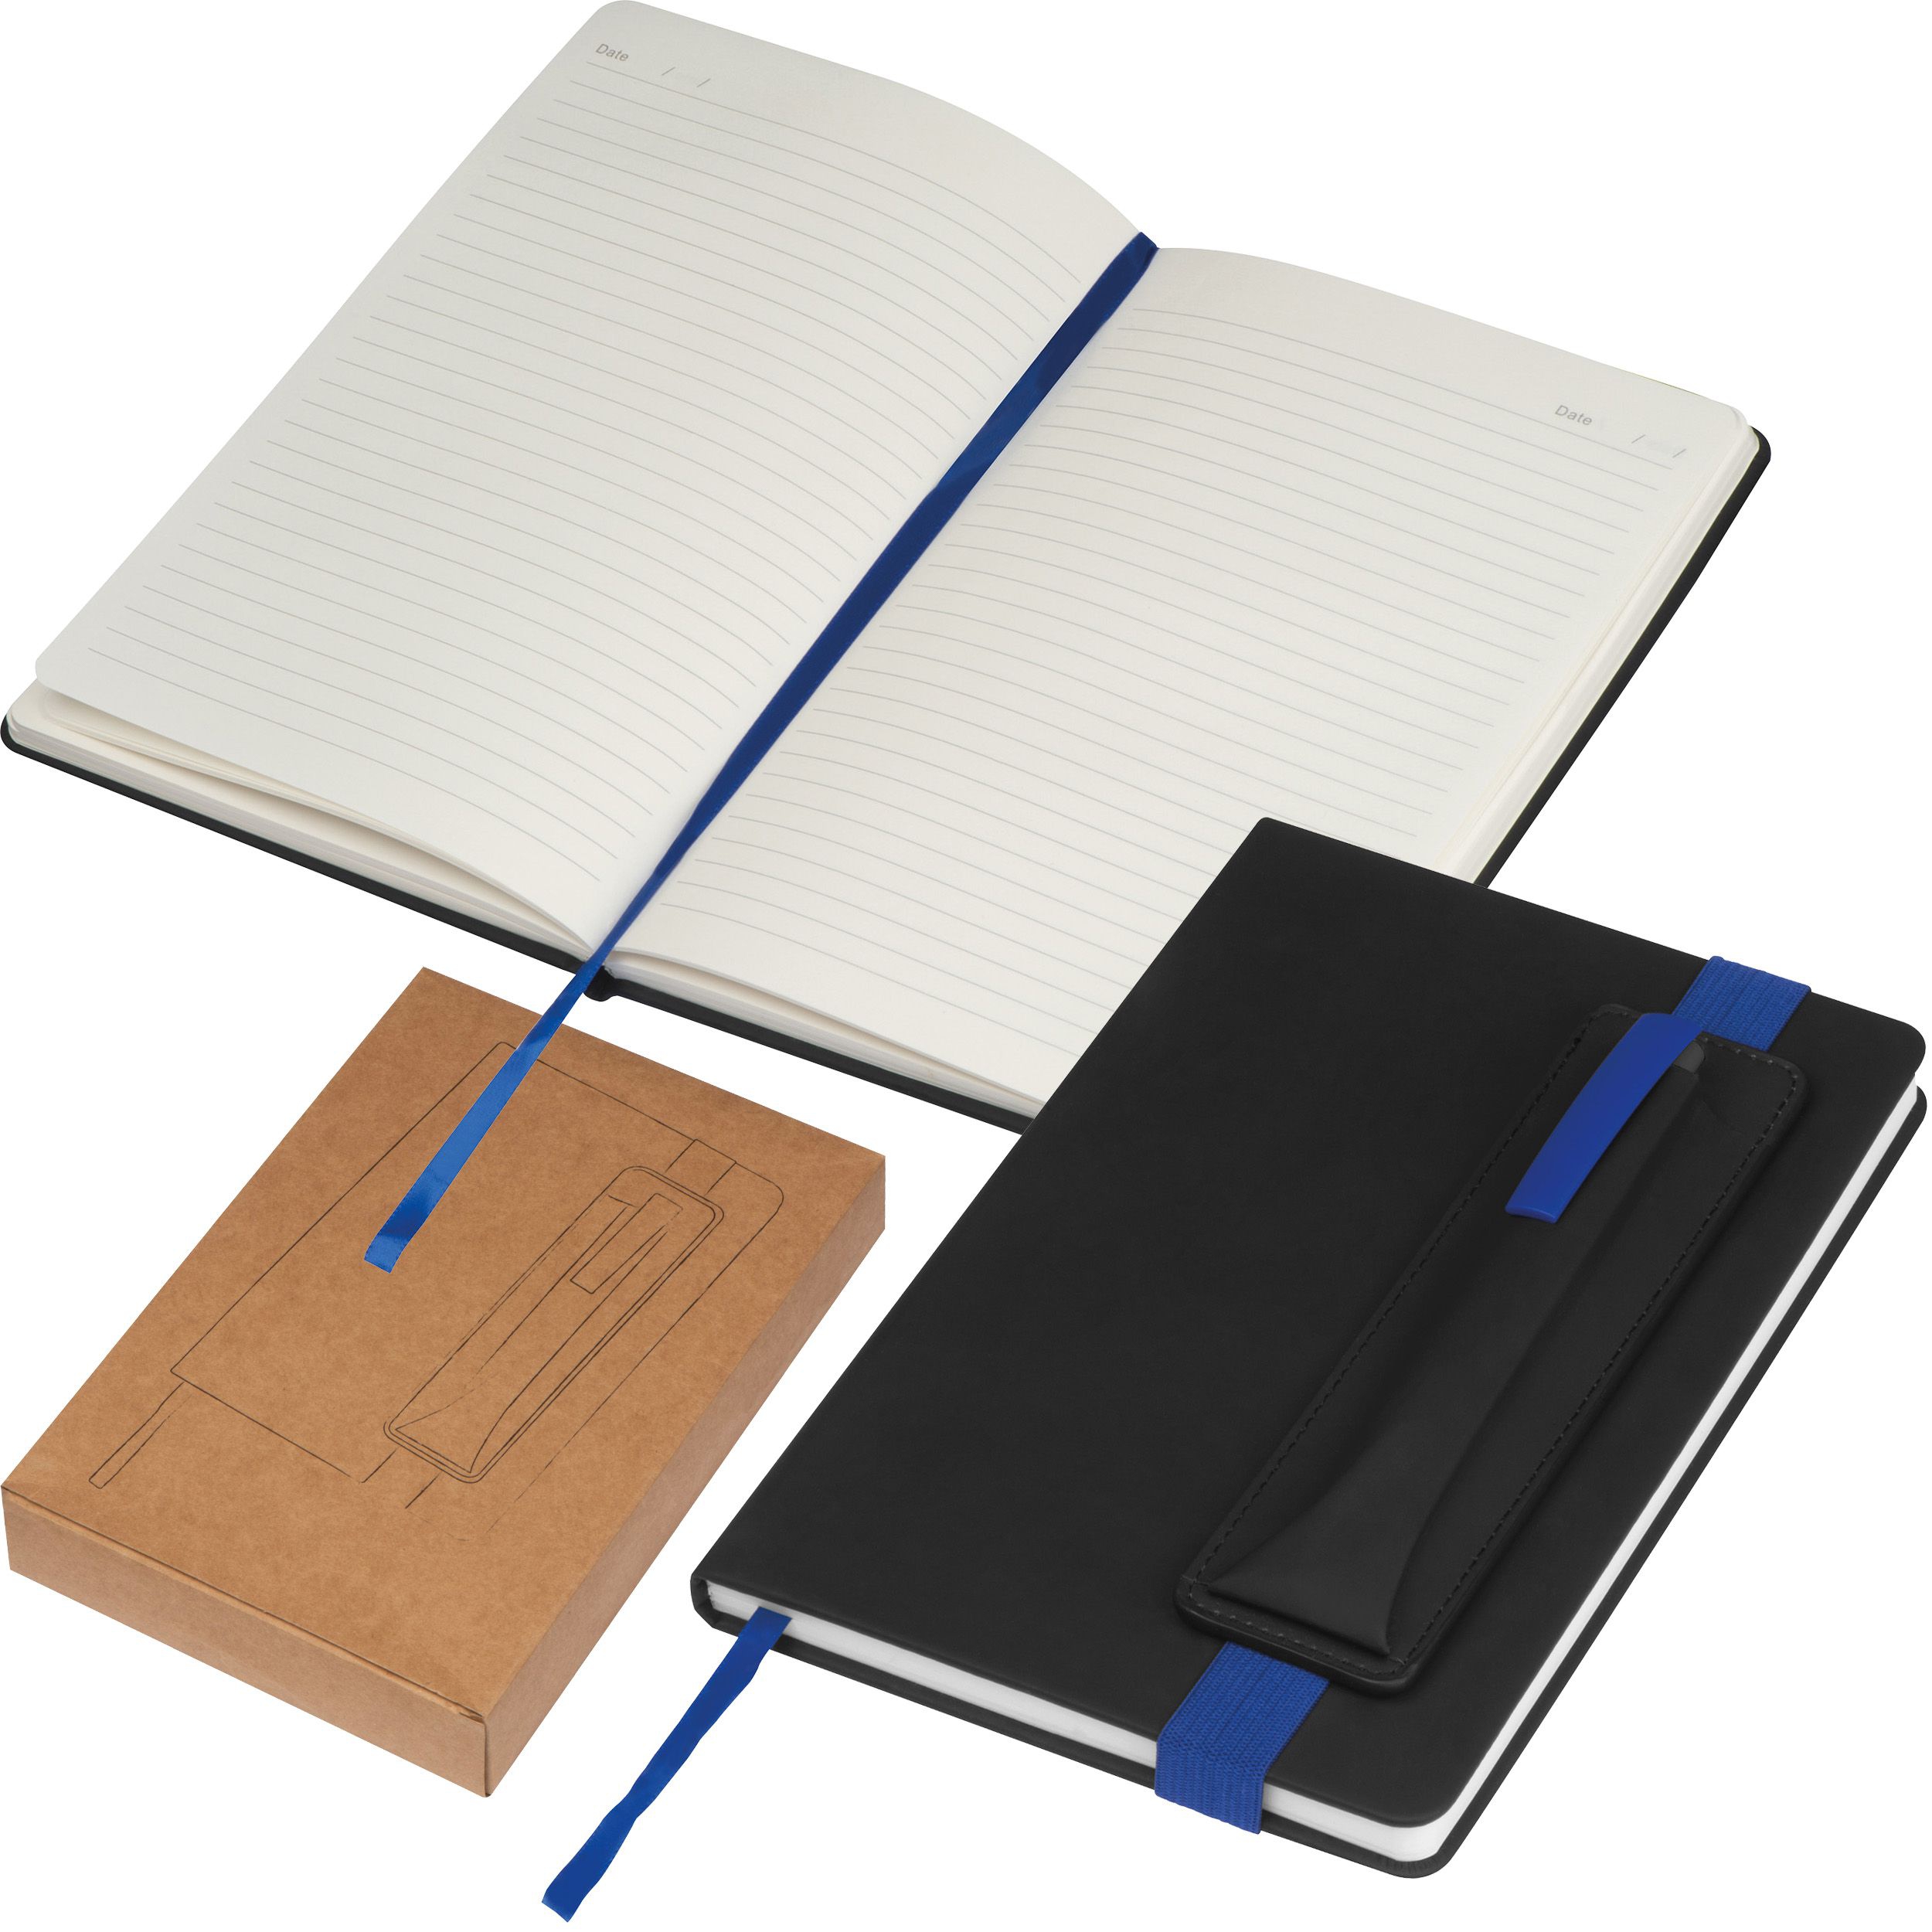 Notizbuch mit farbigen Applikationen, blau